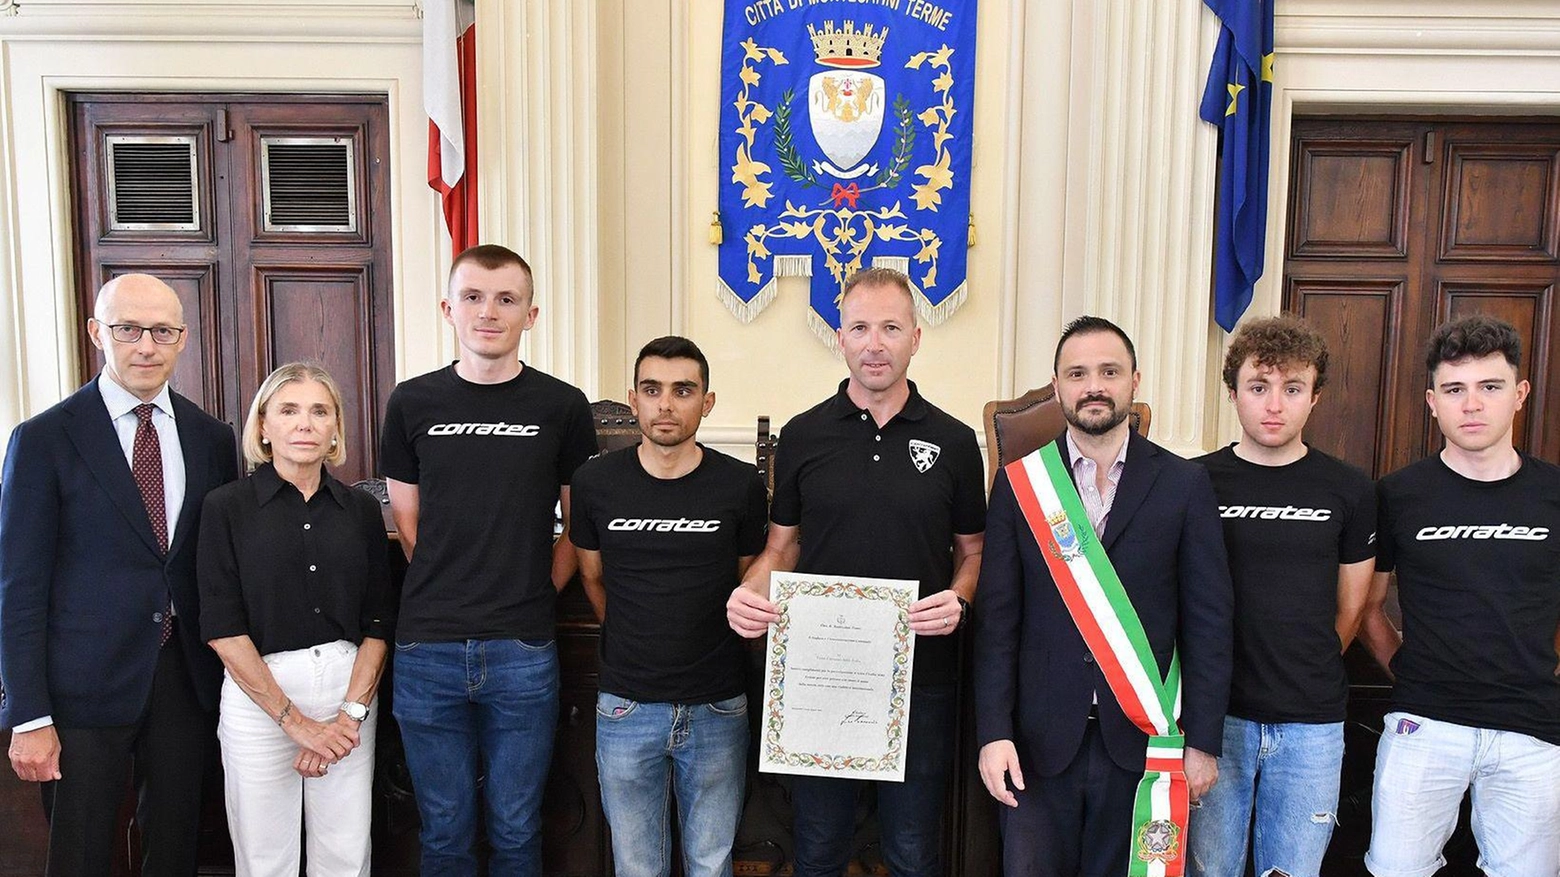 Team Corratec ricevuto dal sindaco: "Orgogliosi del vostro Giro"